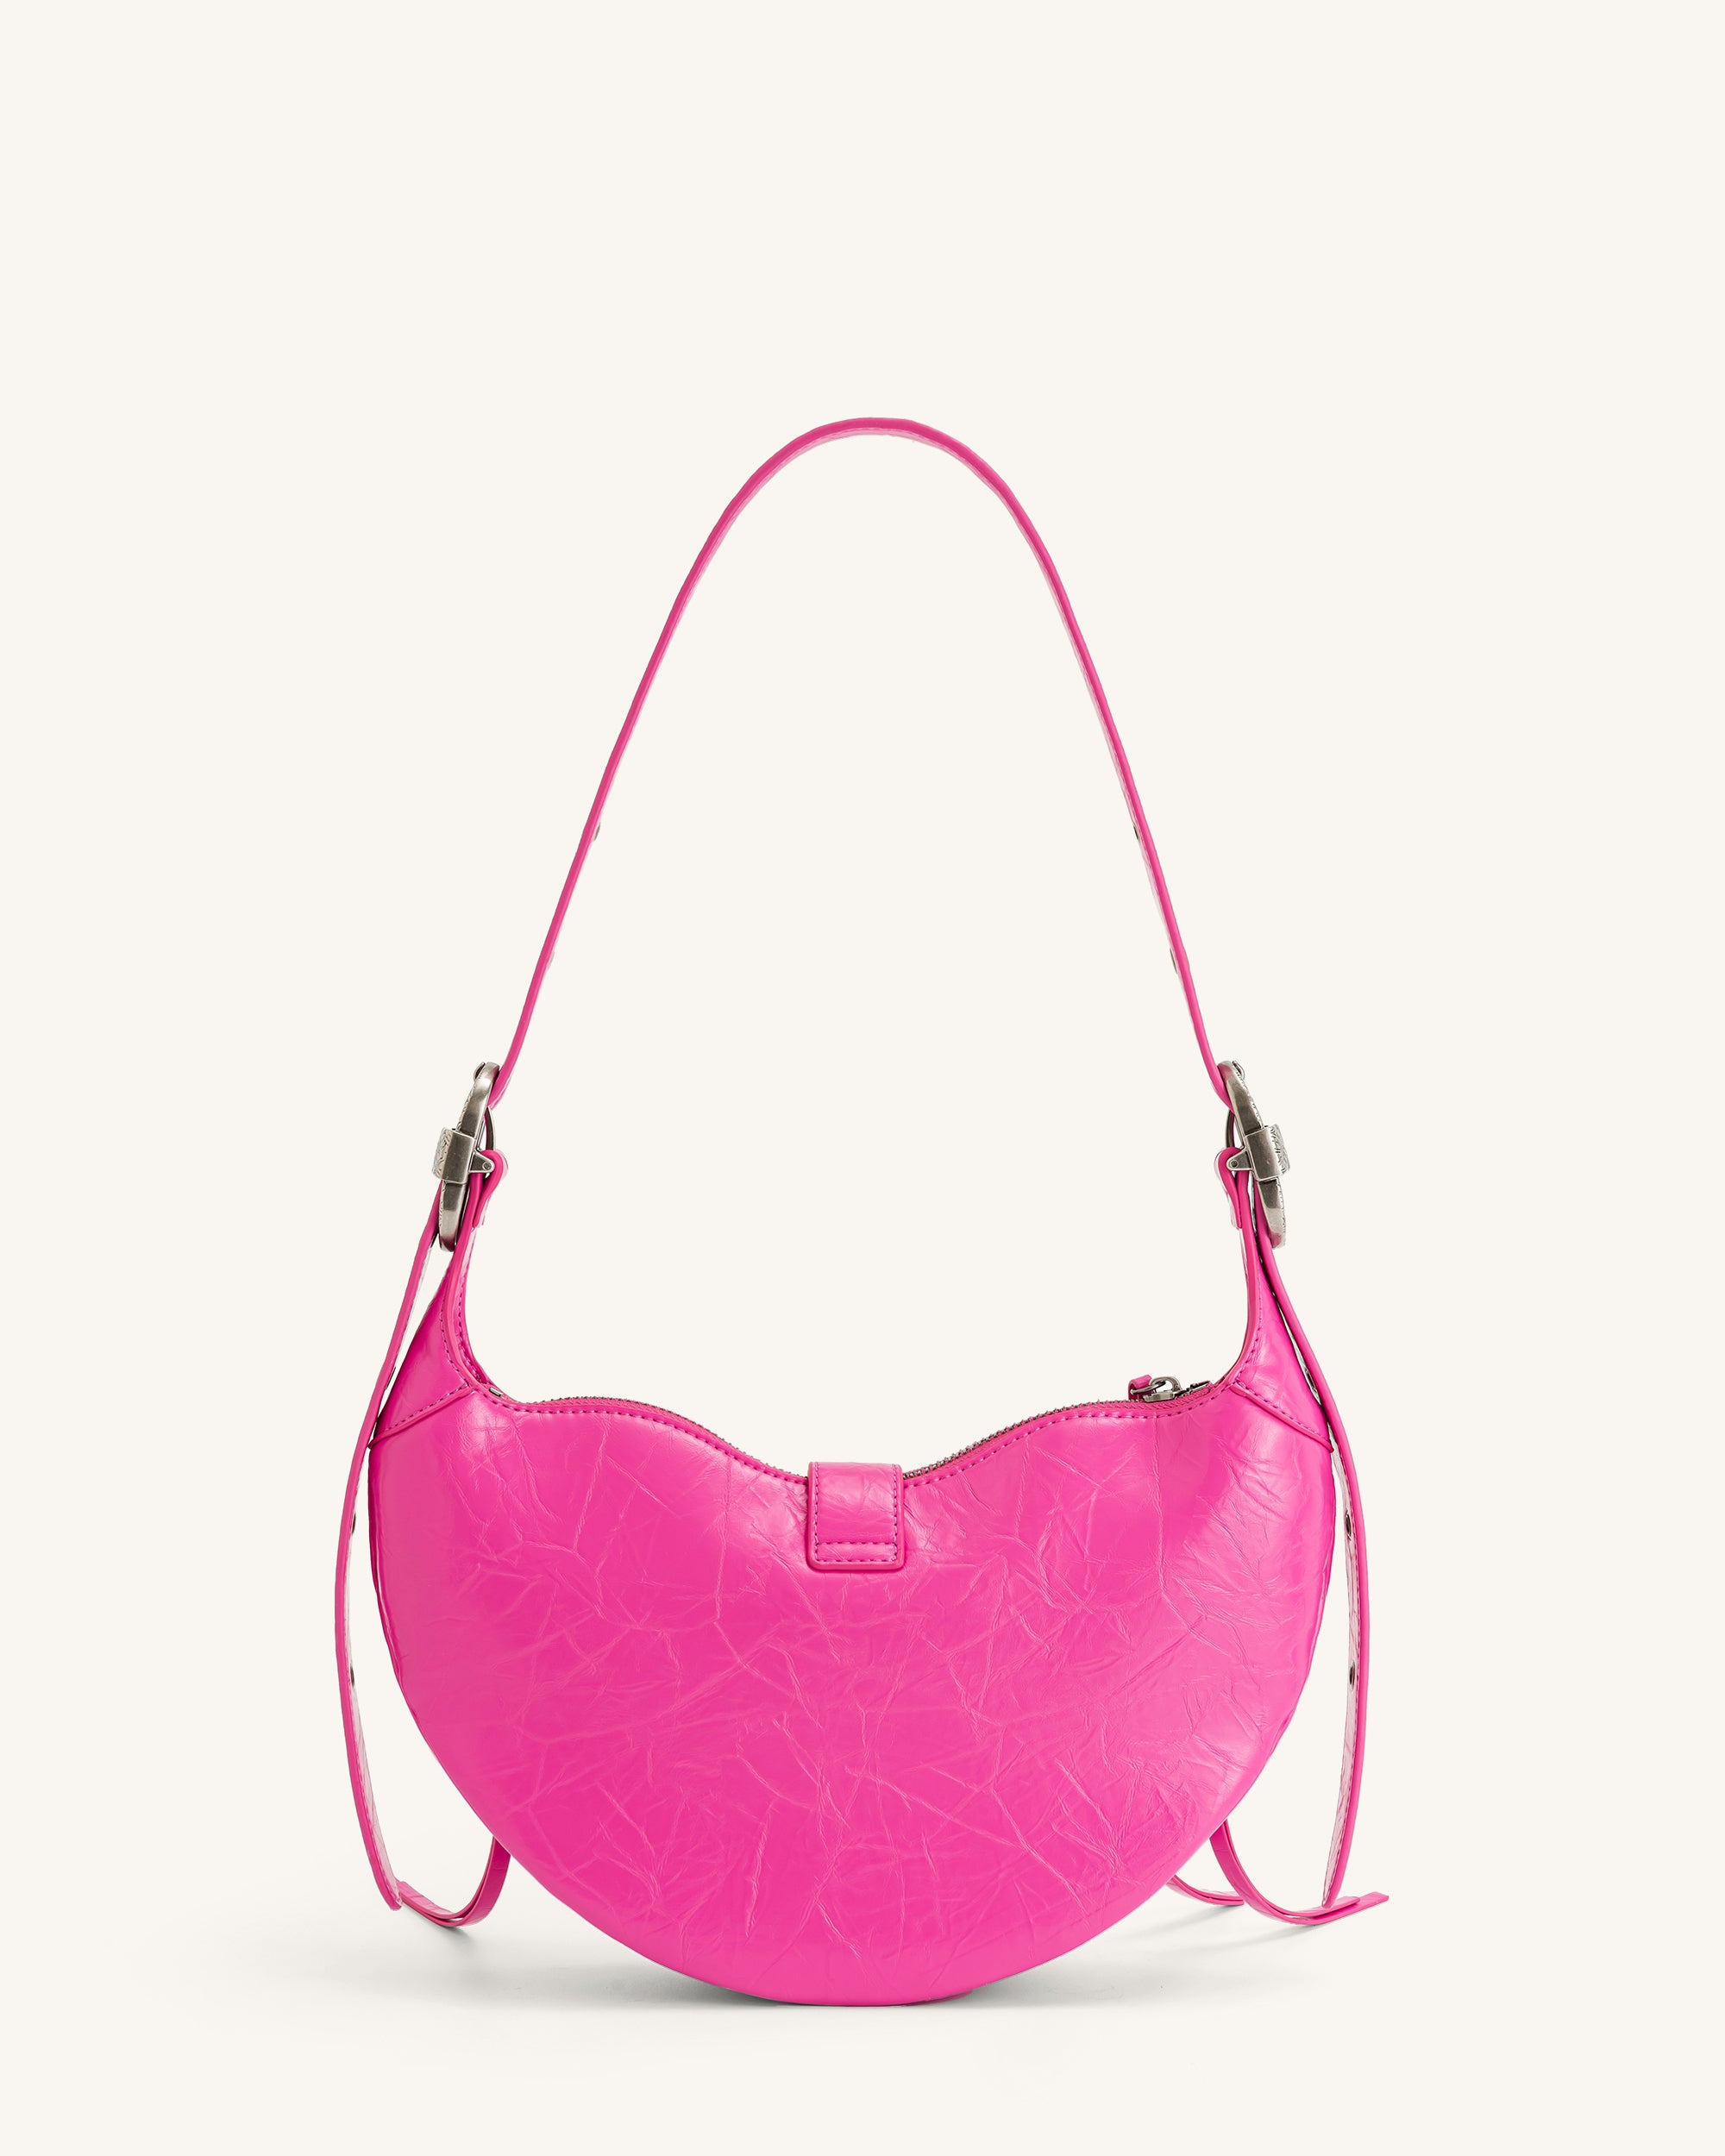 Lily Shoulder Bag - Pink - JW PEI